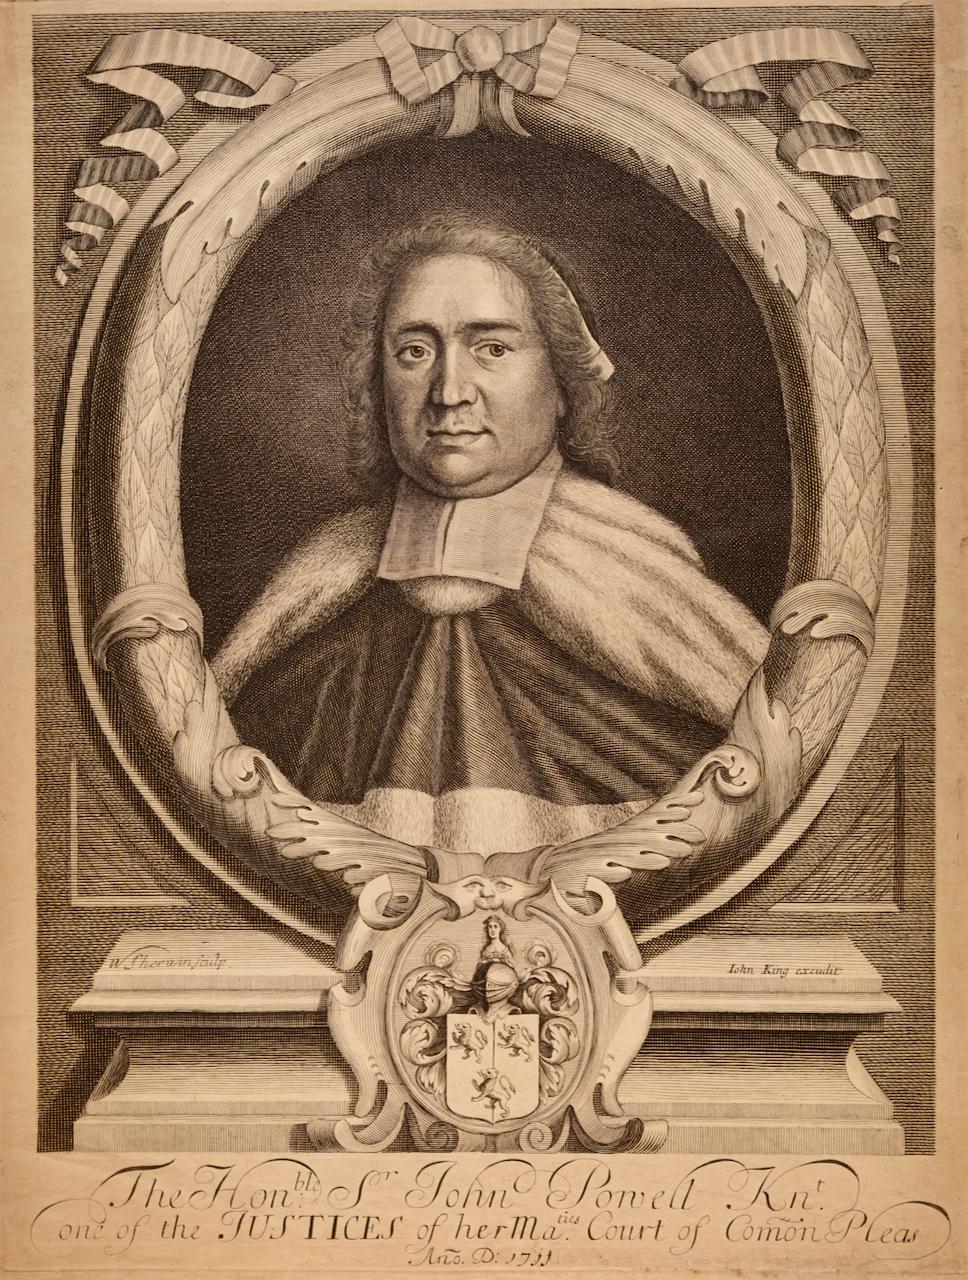 Il s'agit d'un portrait de Sir John Powell datant du début du 18e siècle, intitulé "The Honorable Sr. John Powell, chevalier. Un des juges de la Cour des Plaintes de Sa Majesté. Ano. D 1711". Il a été gravé et publié par John King à Londres en 1711,